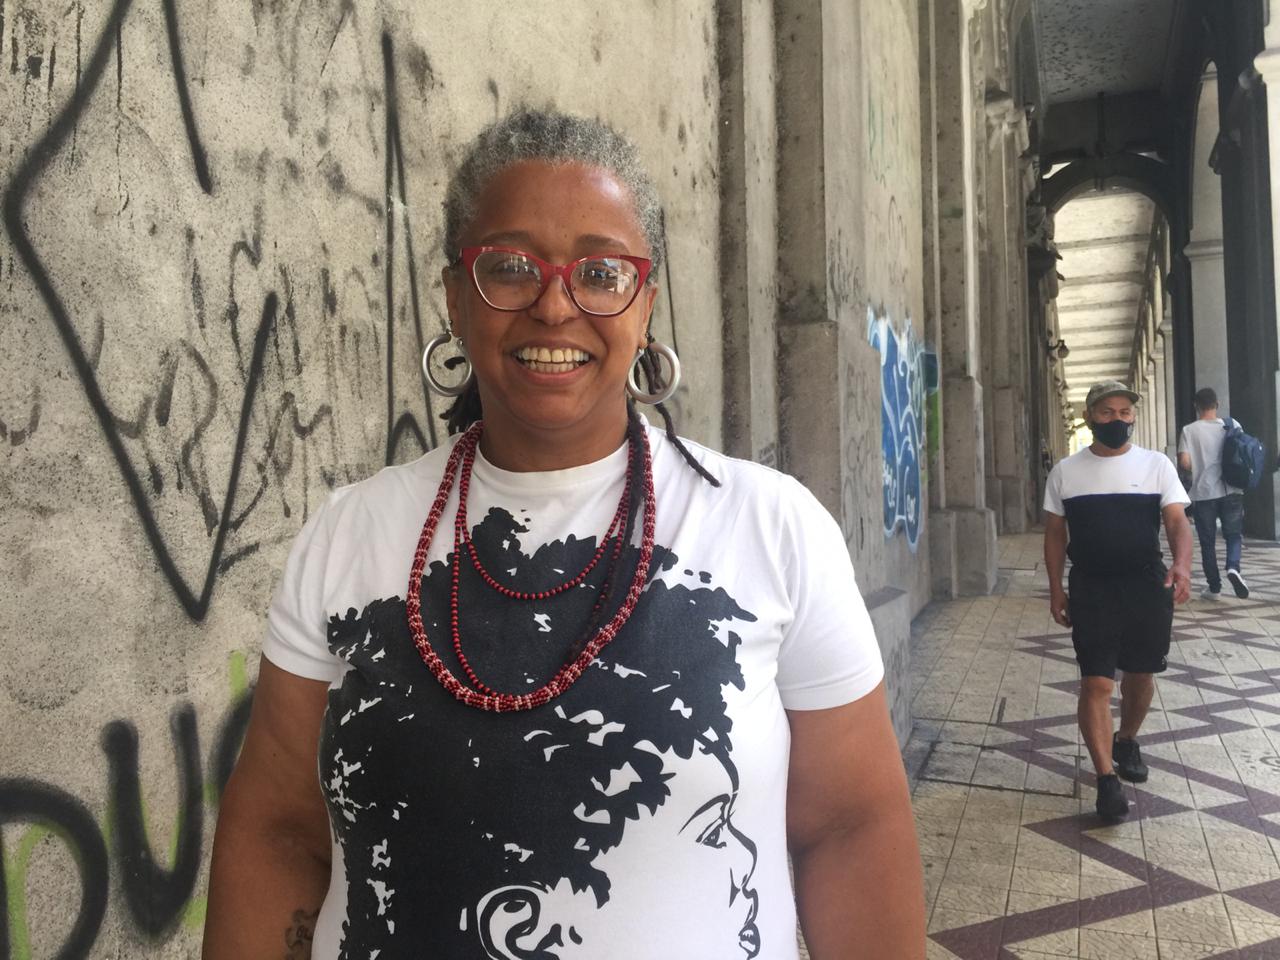 Josi Beatriz Viegas Cunha diz que, apesar de todo seu conhecimento, ainda tem sua capacidade constantemente confrontada pelo fato de ser mulher e negra